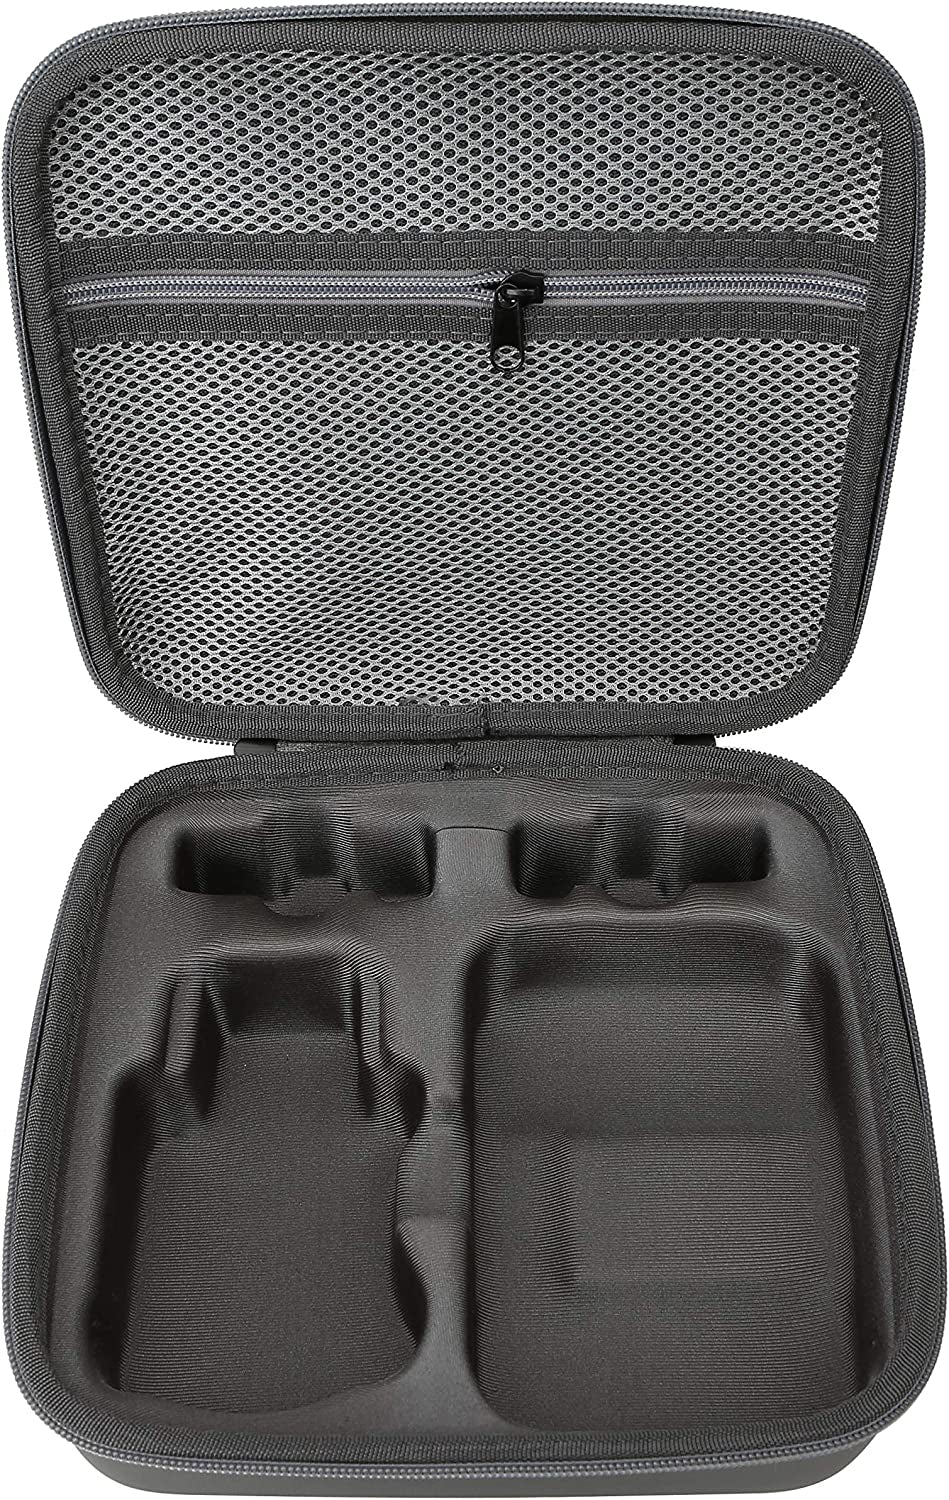 Waterproof Hard Case for DJI Mini 2, Compatible DJI Mini2/Mini